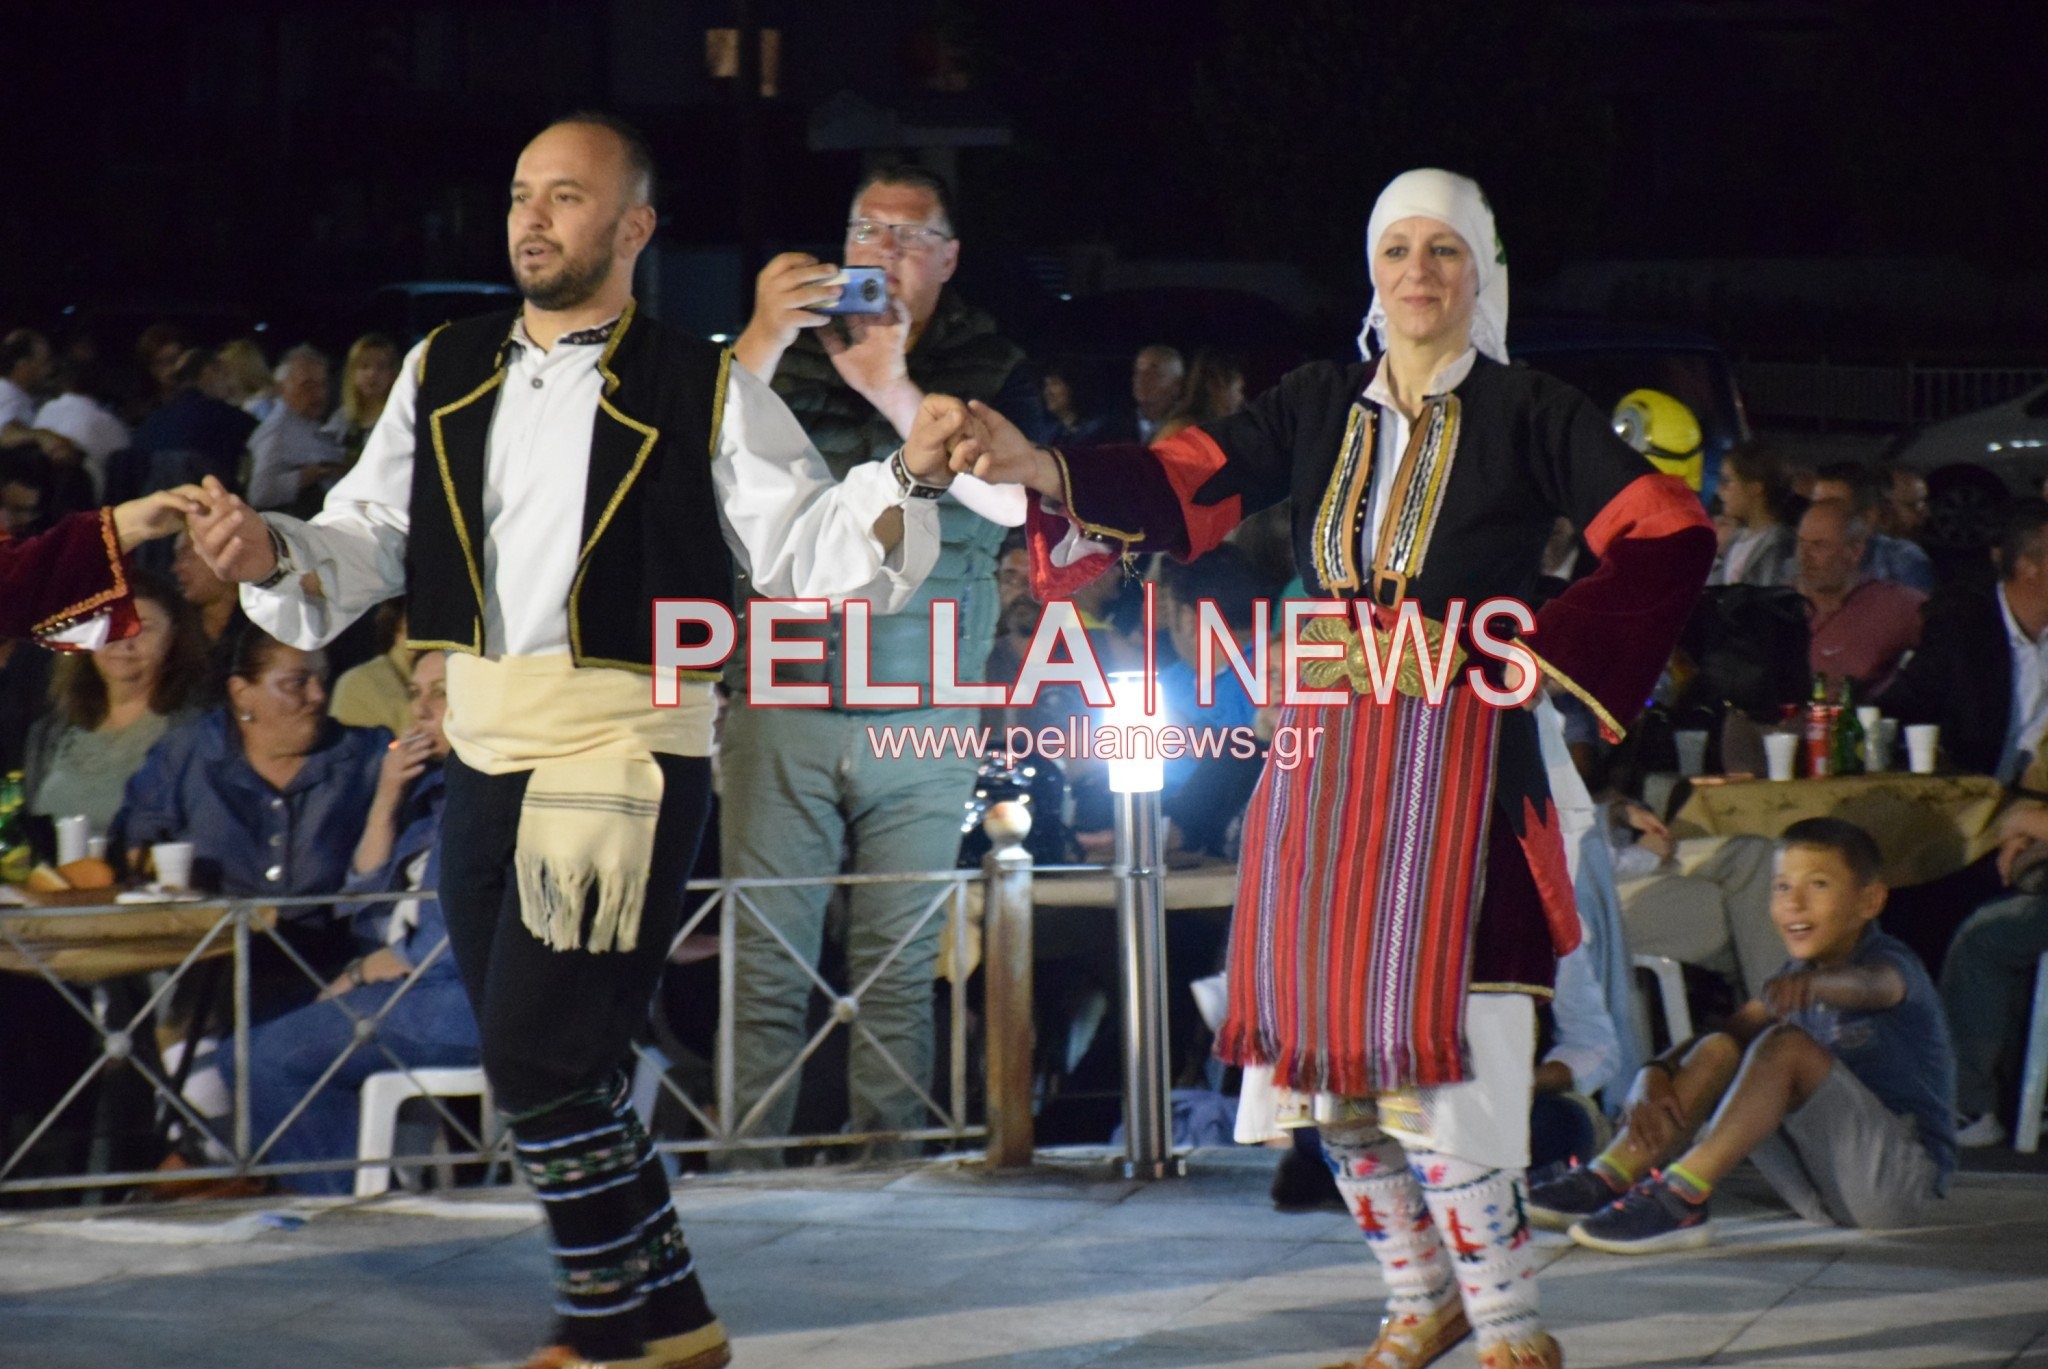 Μια φαντασμαγορική βραδιά στα Καλύβια Πέλλας (φωτογραφίες / βίντεο)